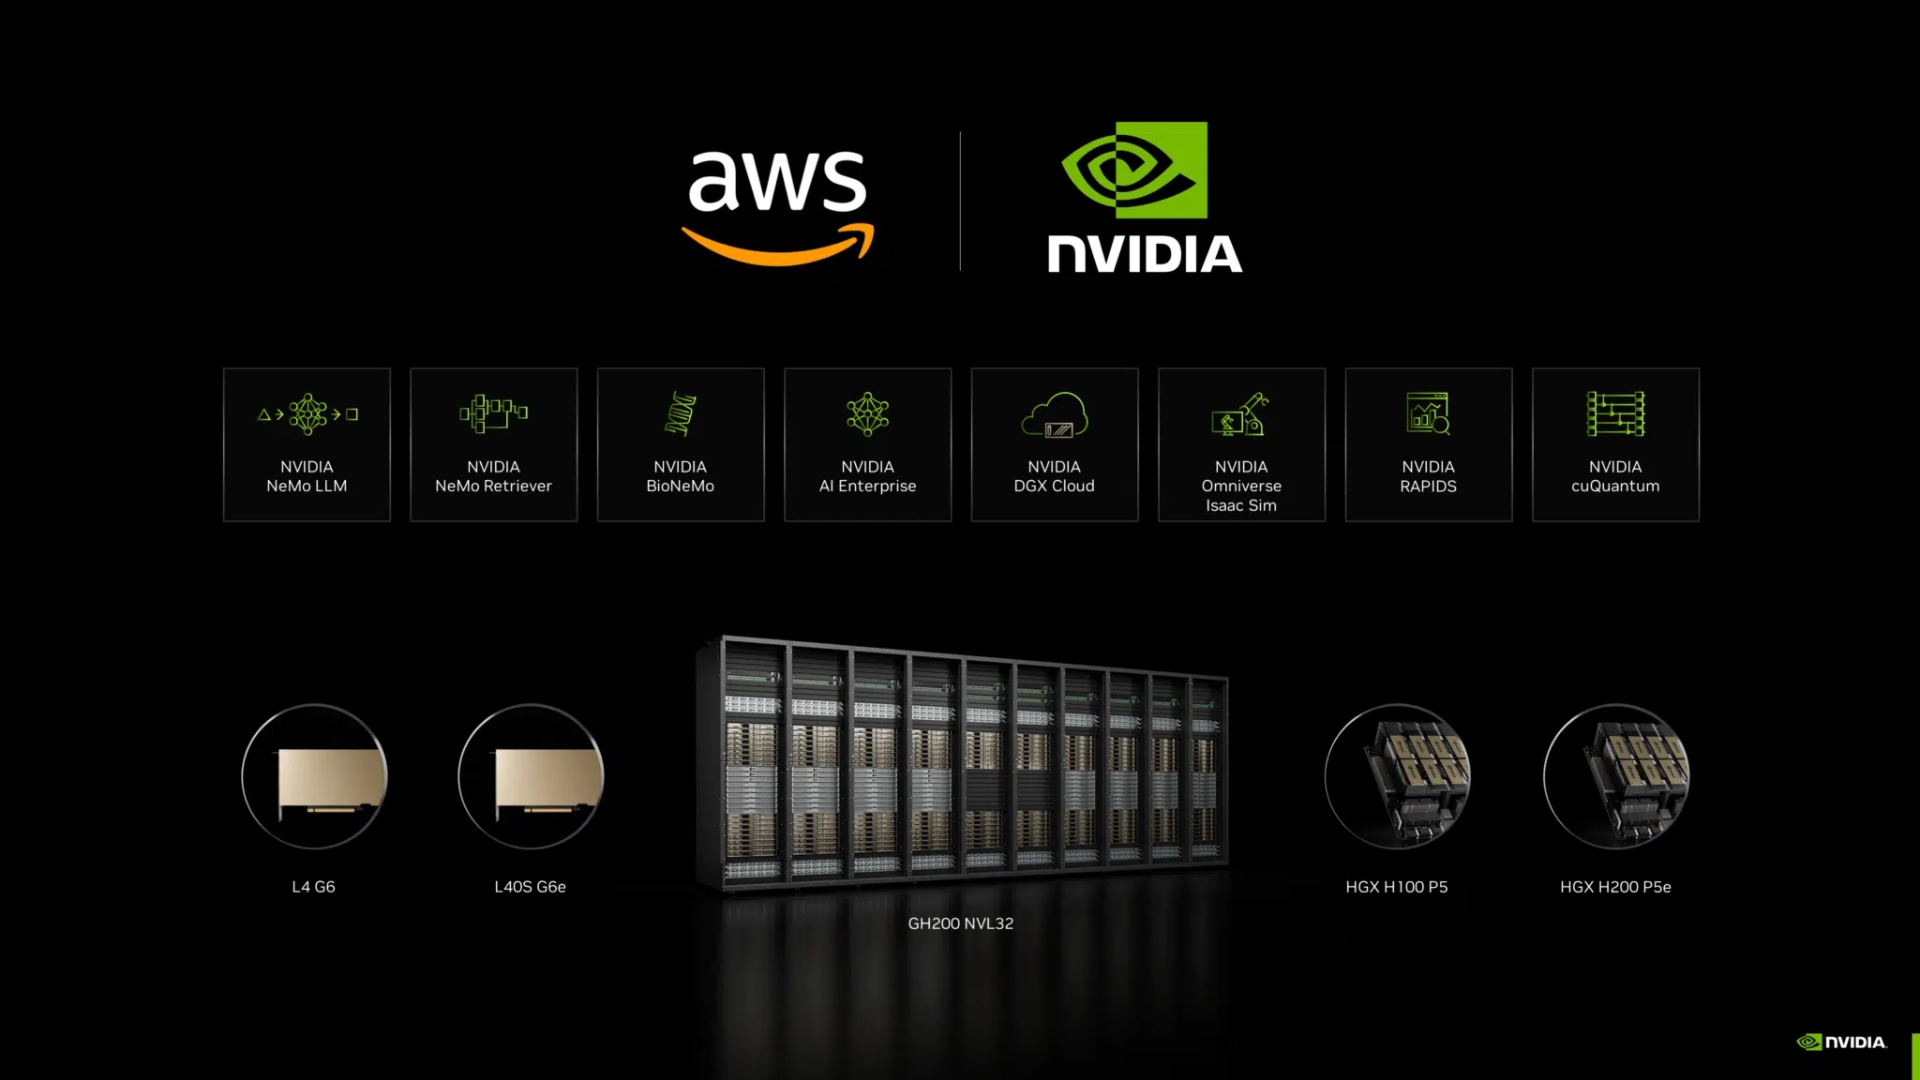 AWS and NVIDIA image